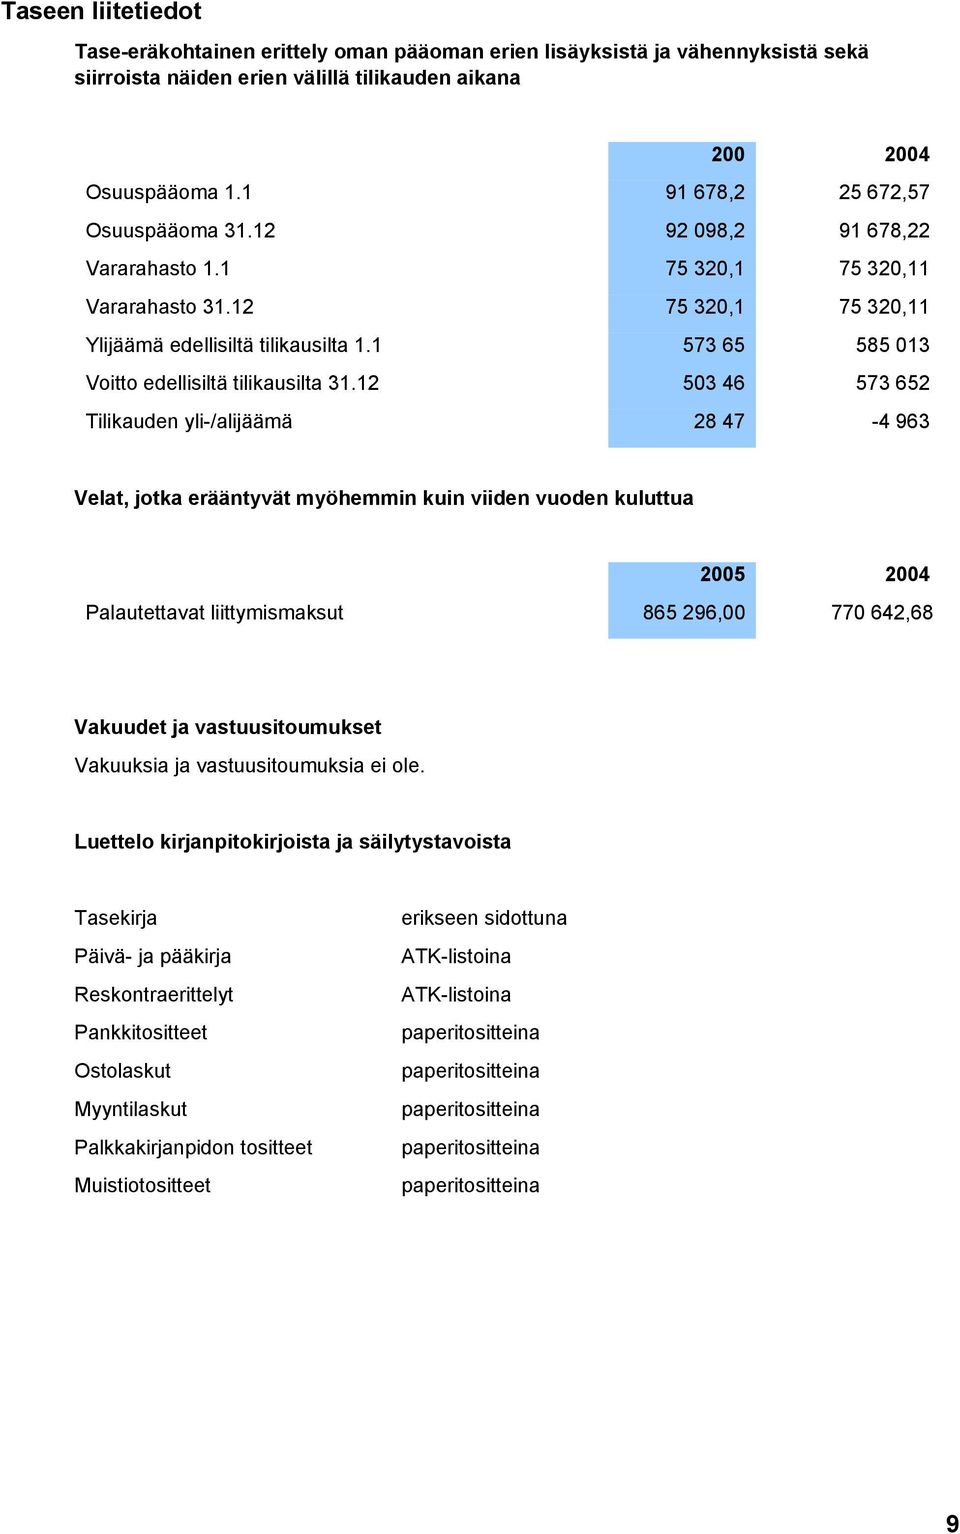 1 573 652 585 013 Voitto edellisiltä tilikausilta 31.